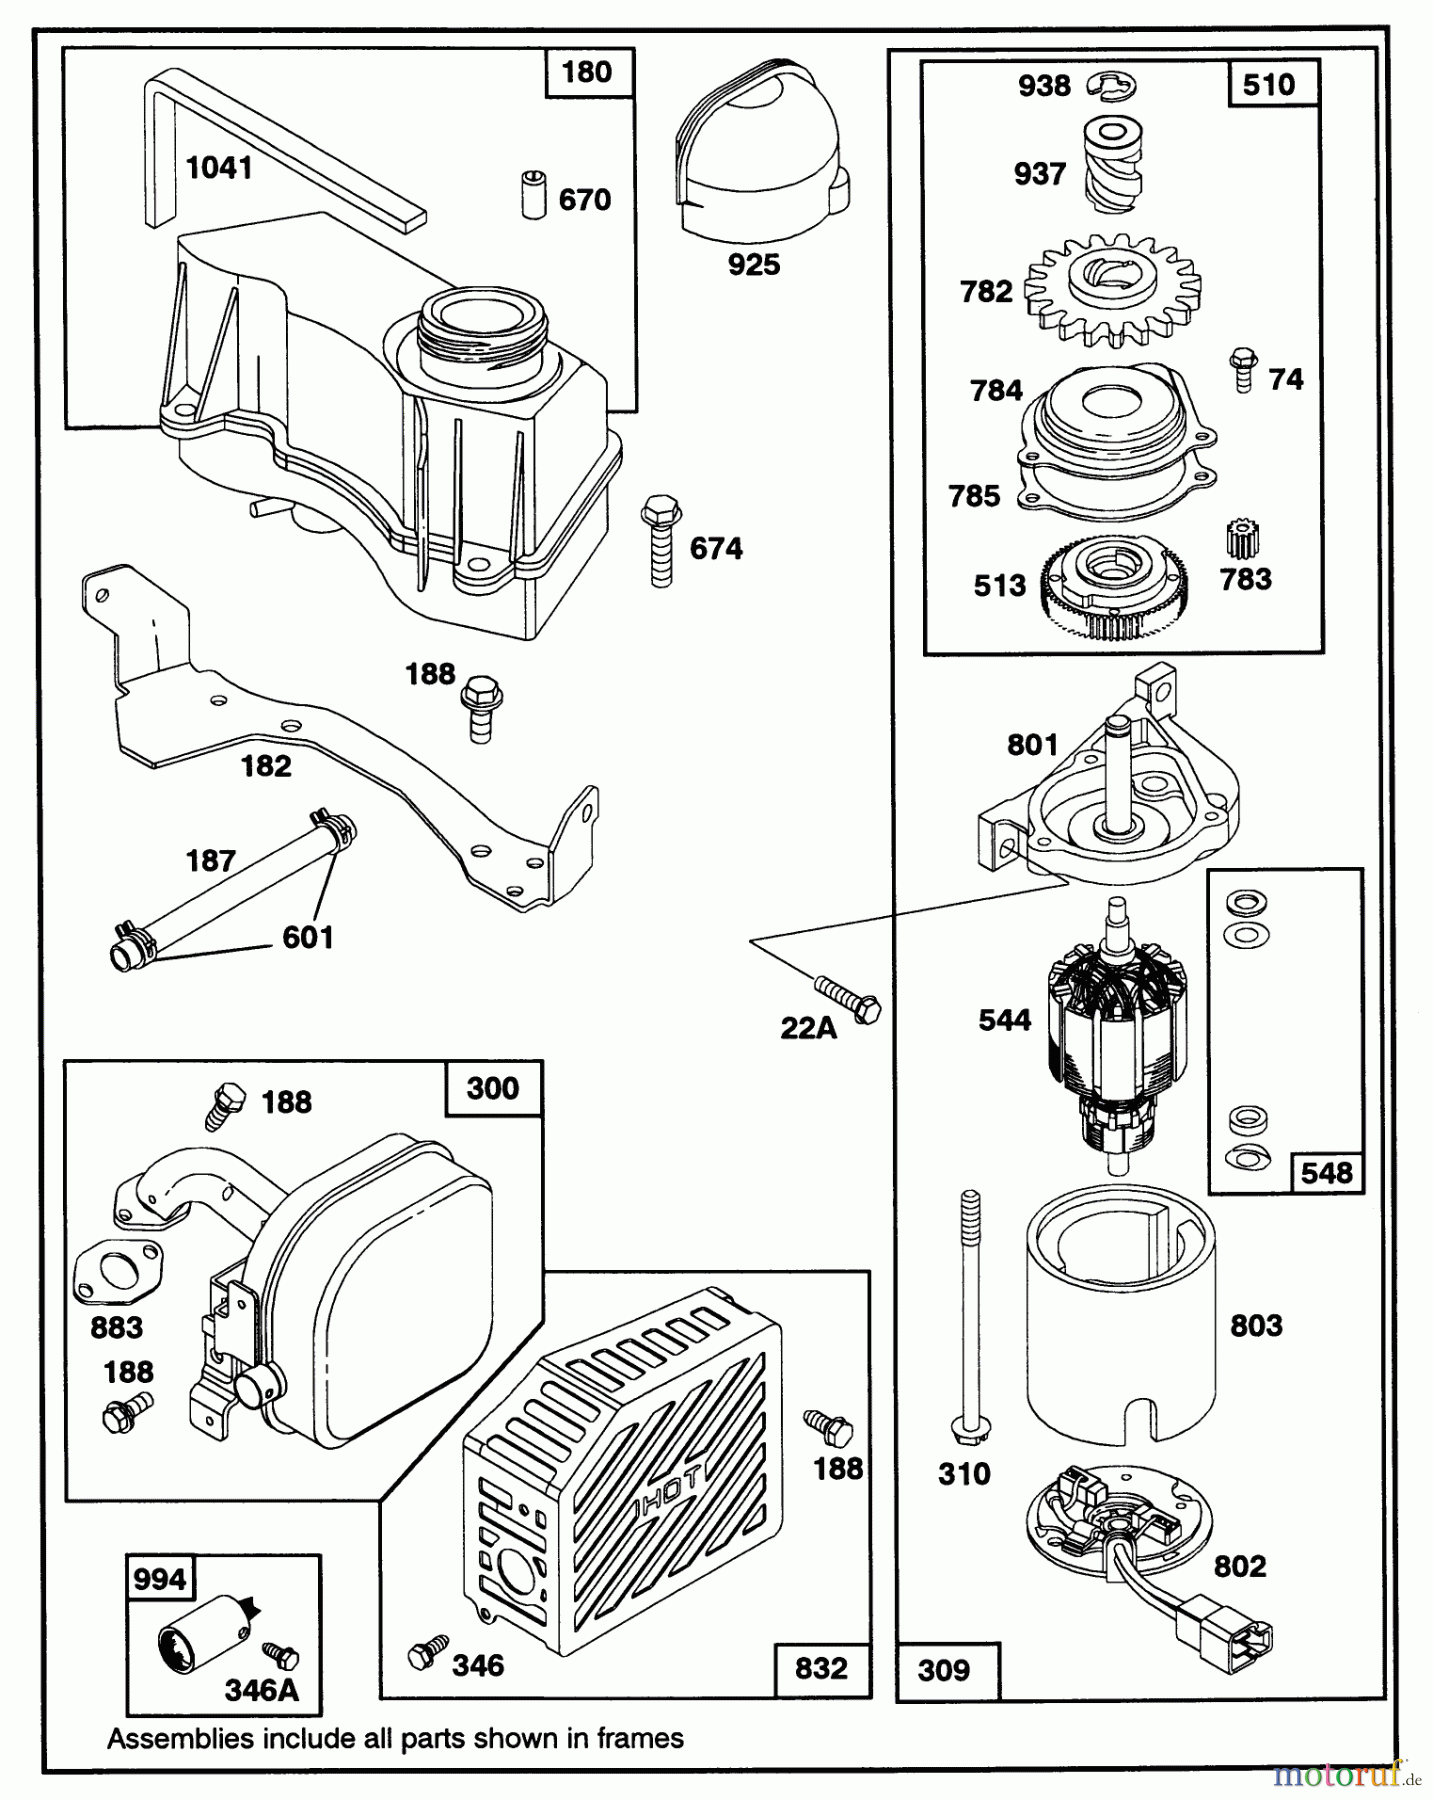  Toro Neu Mowers, Walk-Behind Seite 1 20325 - Toro Lawnmower, 1992 (2000001-2999999) ENGINE GTS-150 77-8990 #4